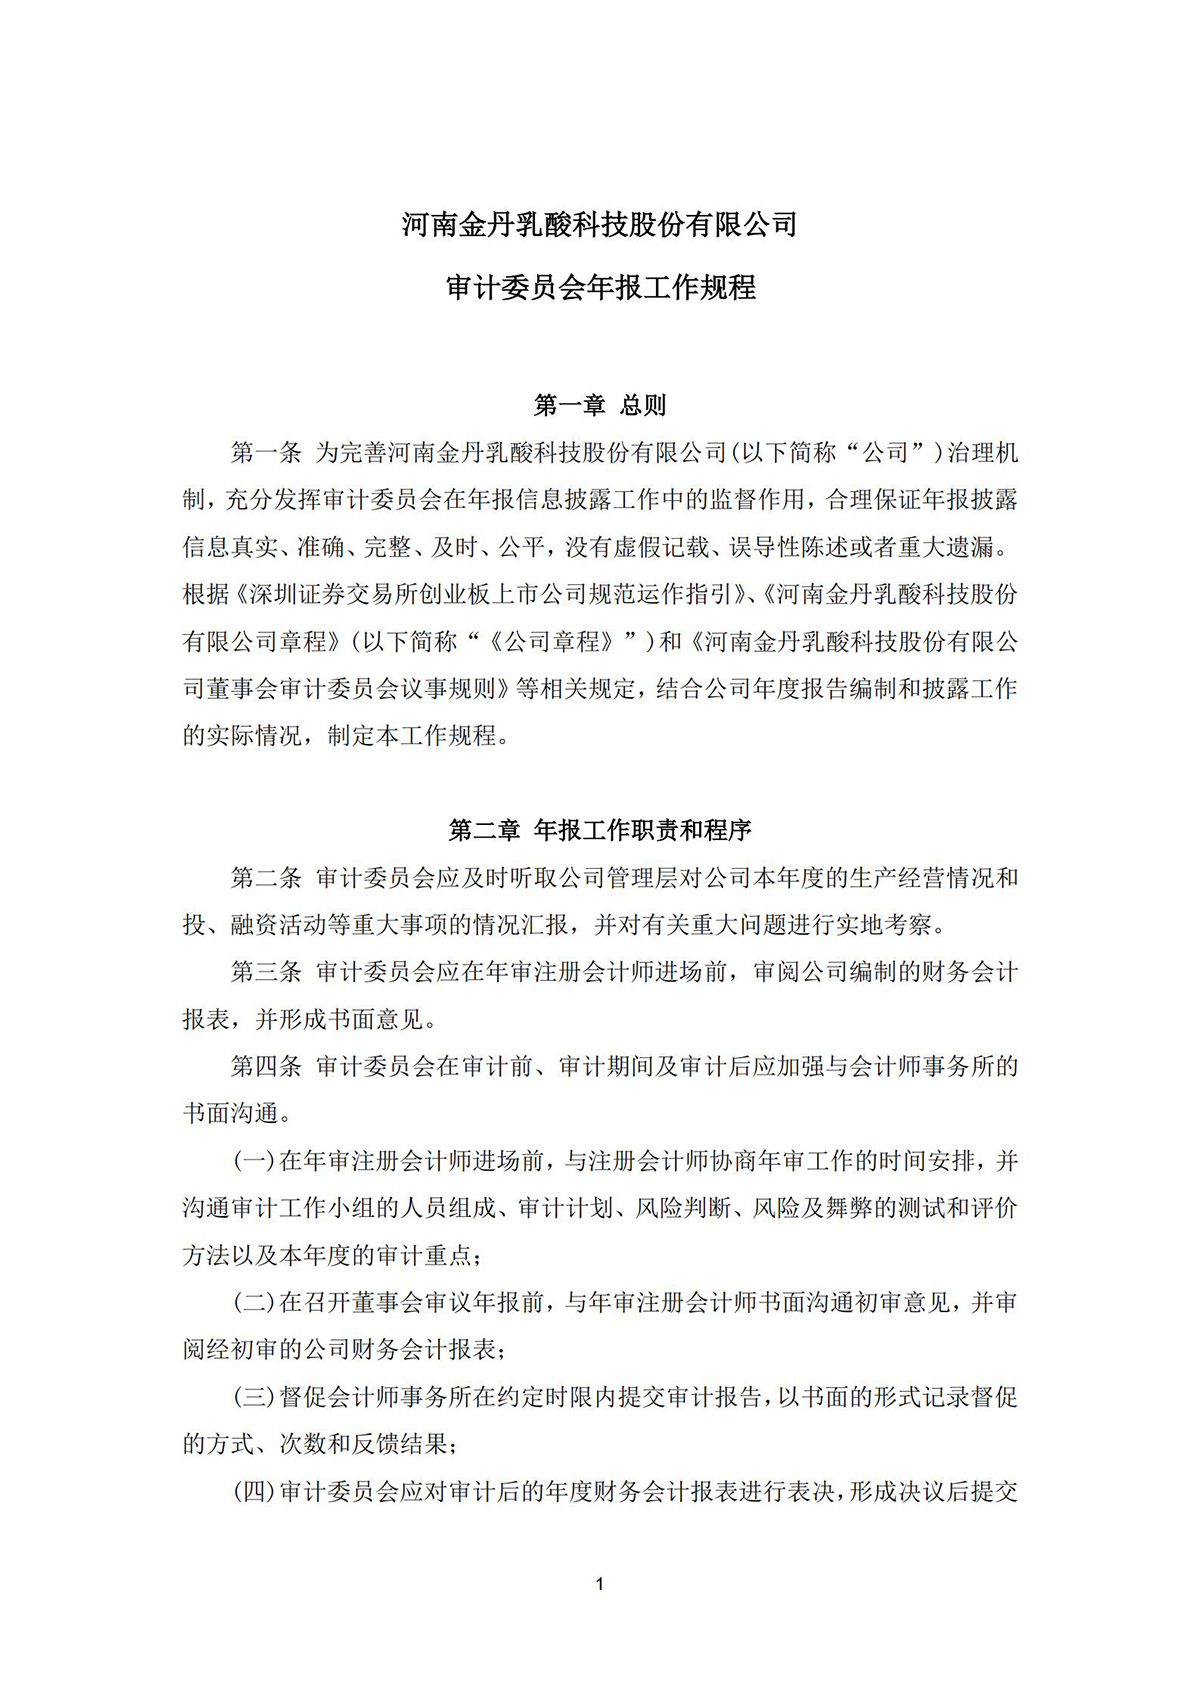 河南金丹乳酸科技股份有限公司  审计委员会年报工作规程